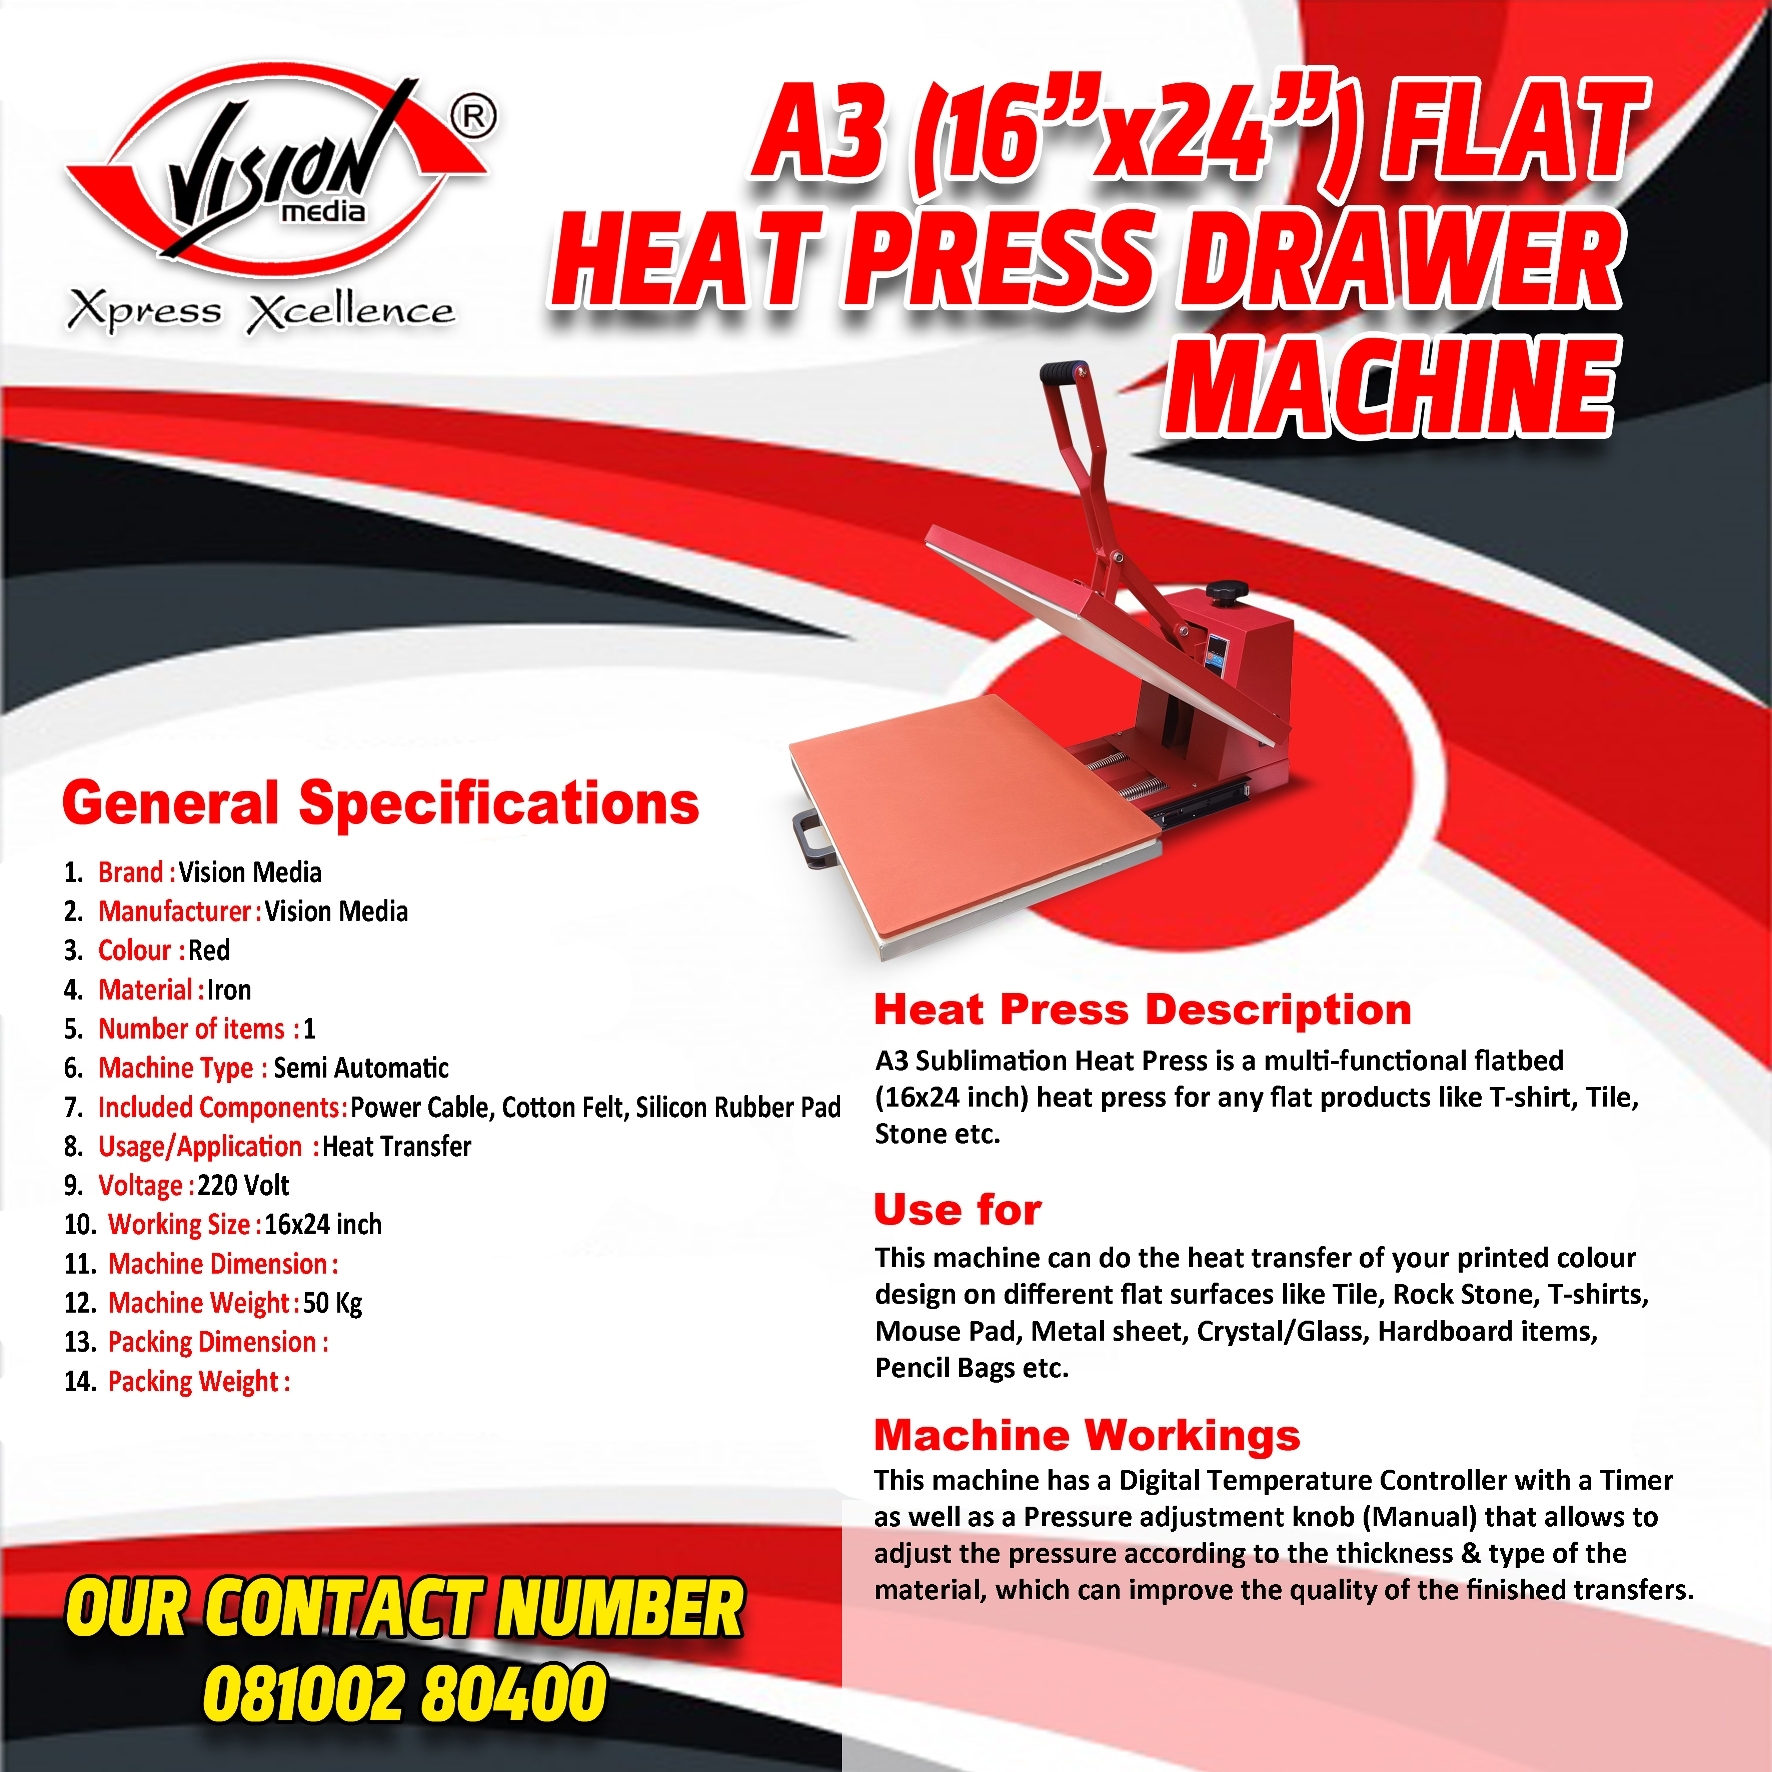 A3 Flat Heat Press Drawer